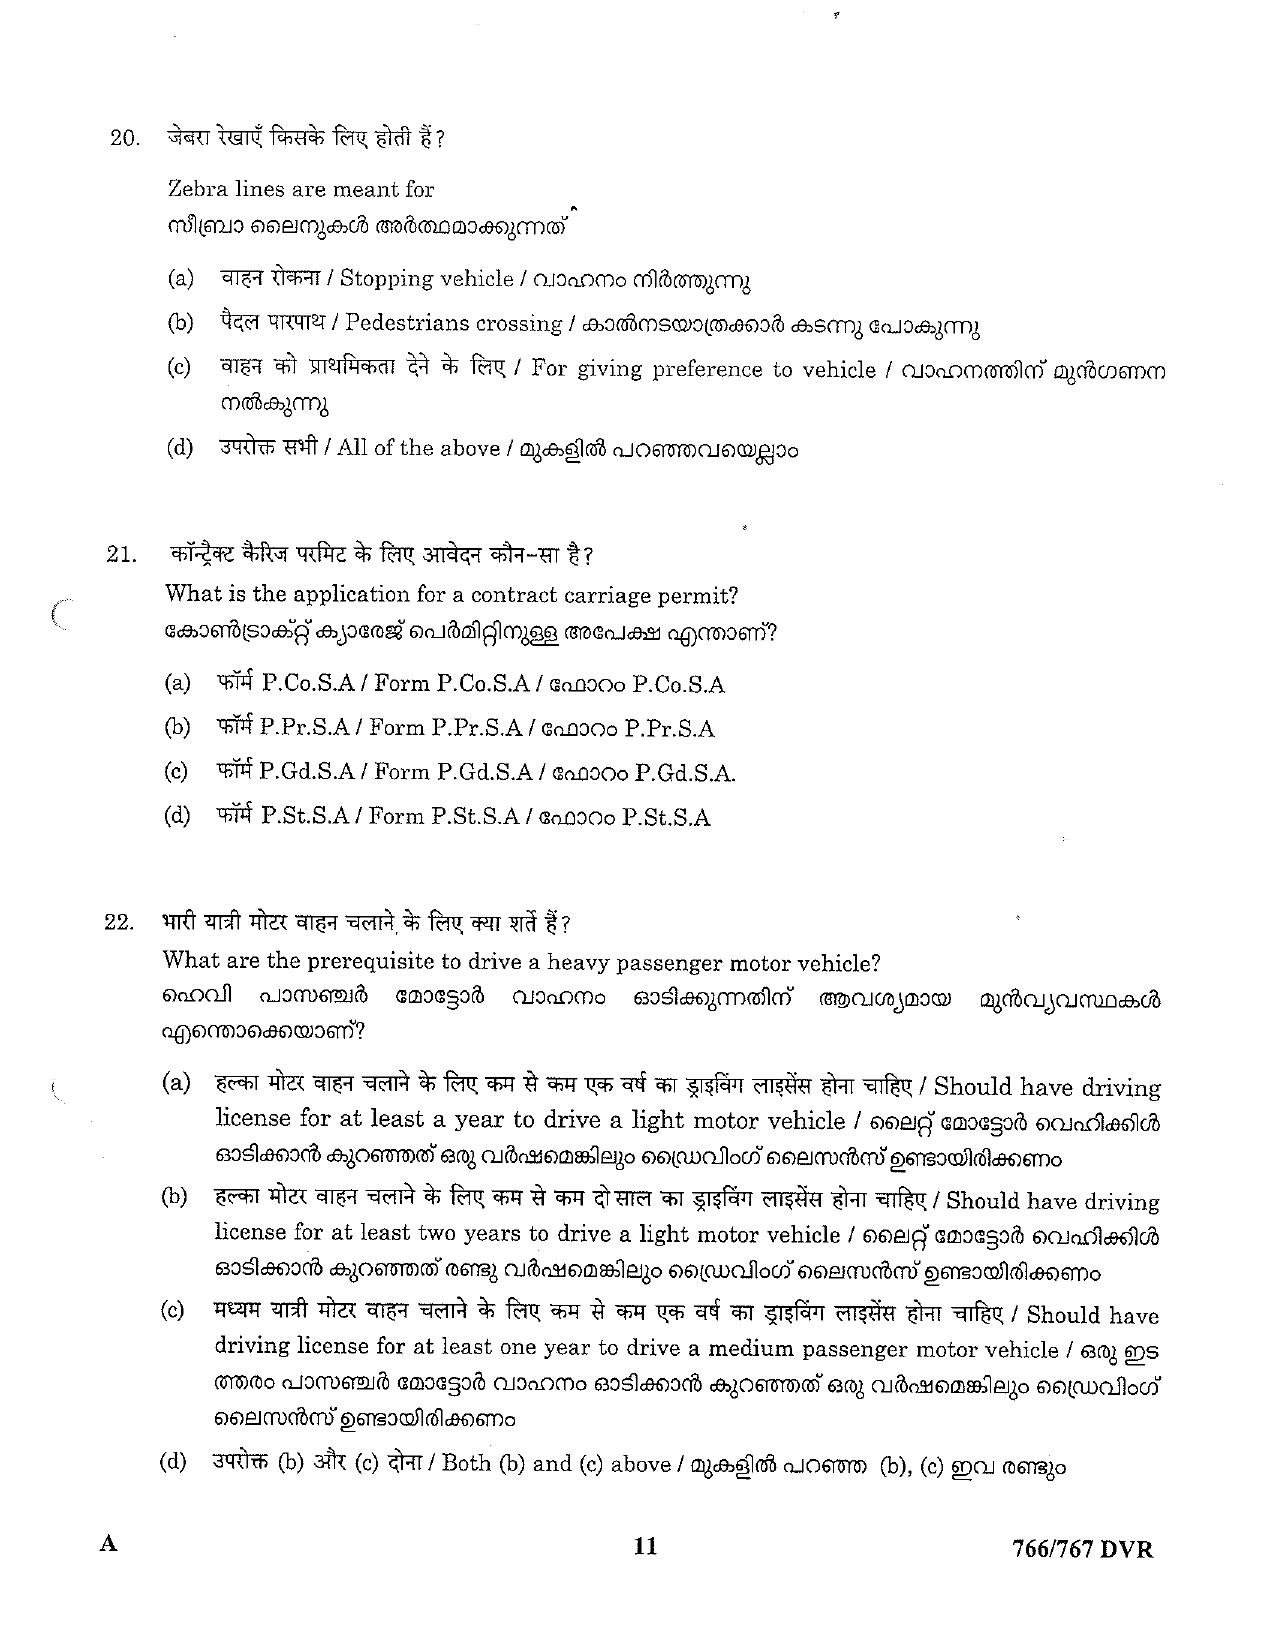 LPSC Driver (LVD/HVD) 2023 Question Paper - Page 11